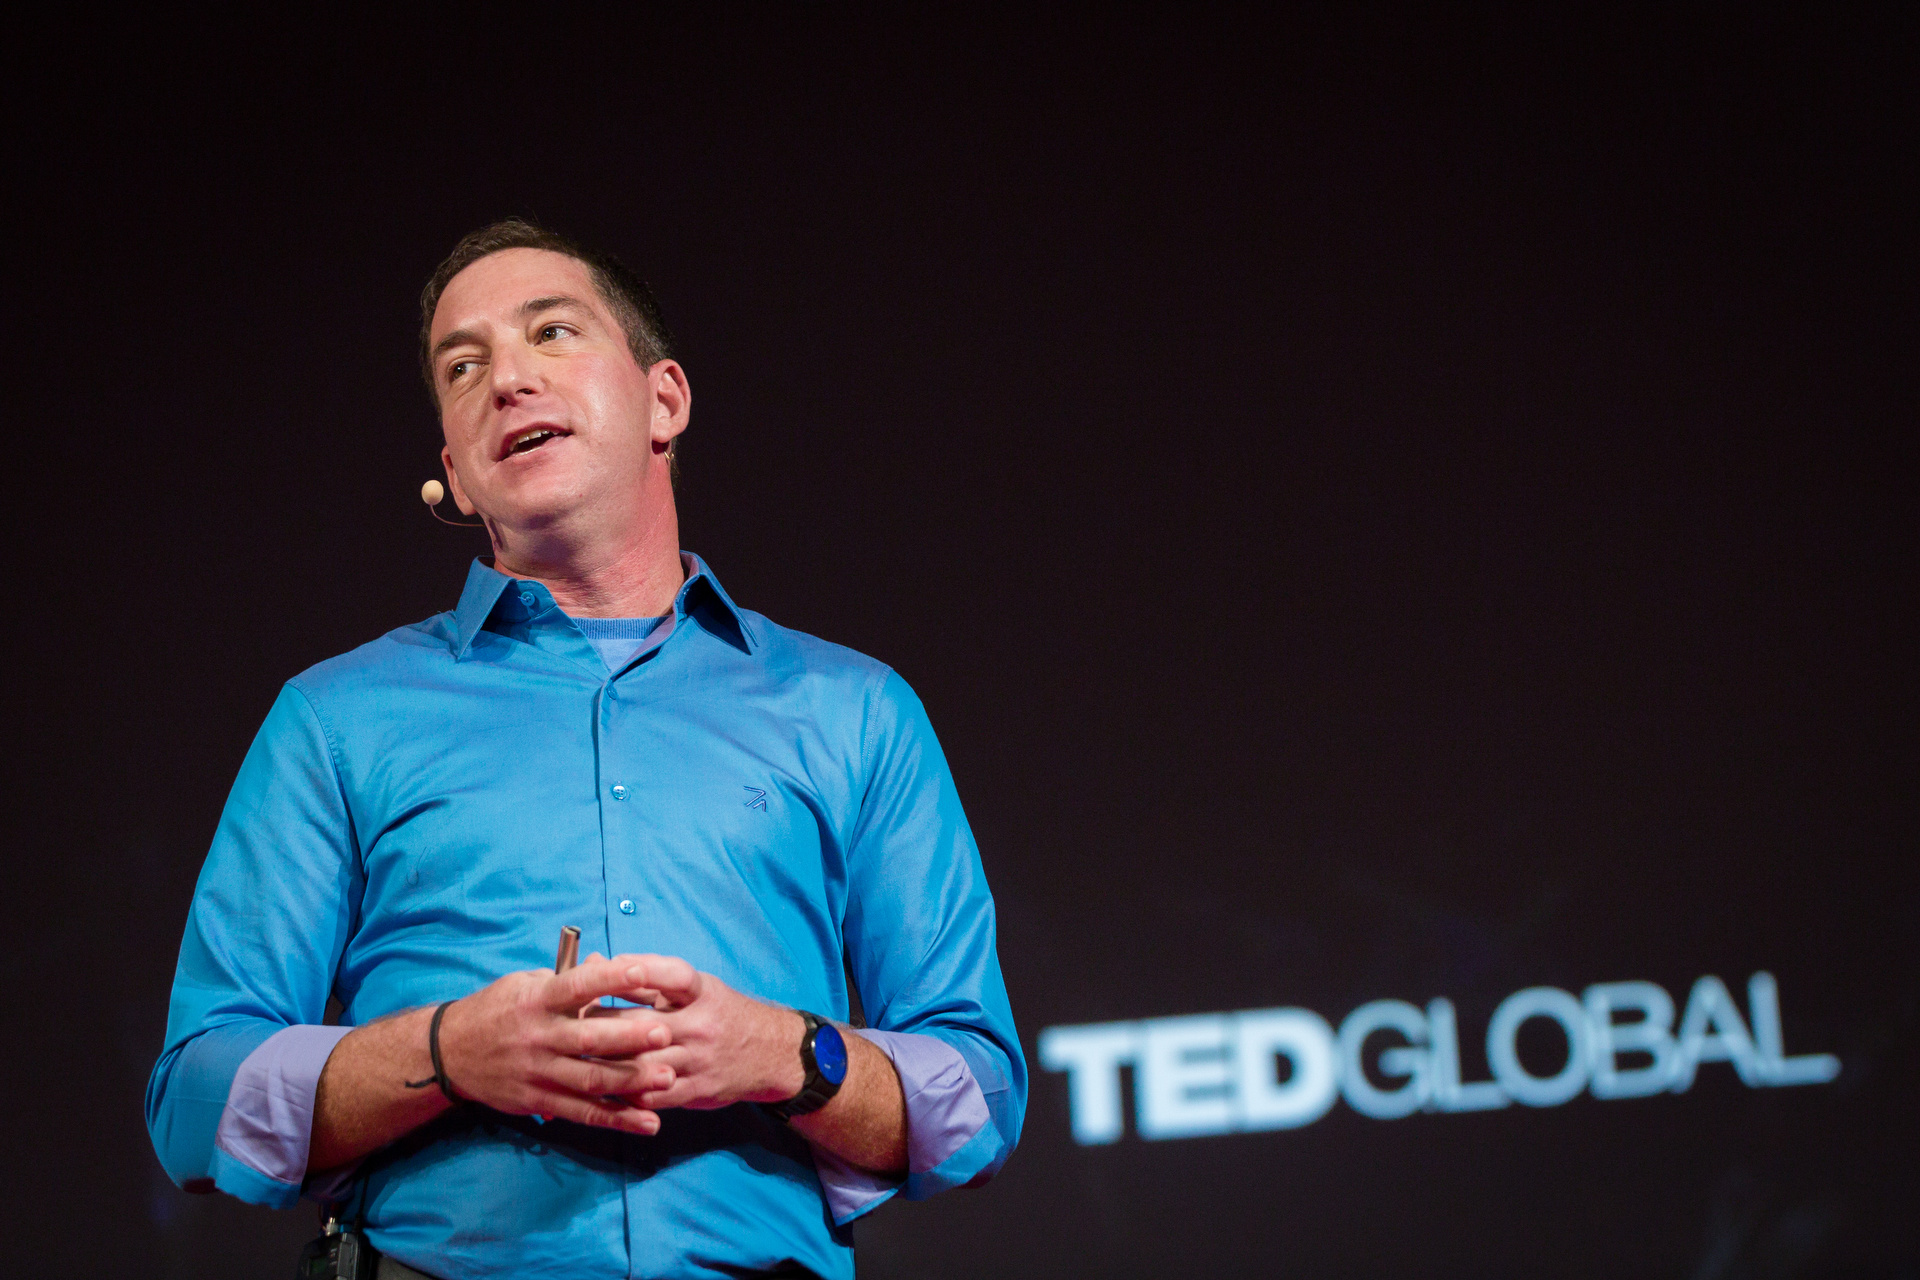 Glenn Greenwald speaking at TEDGlobal 2014.